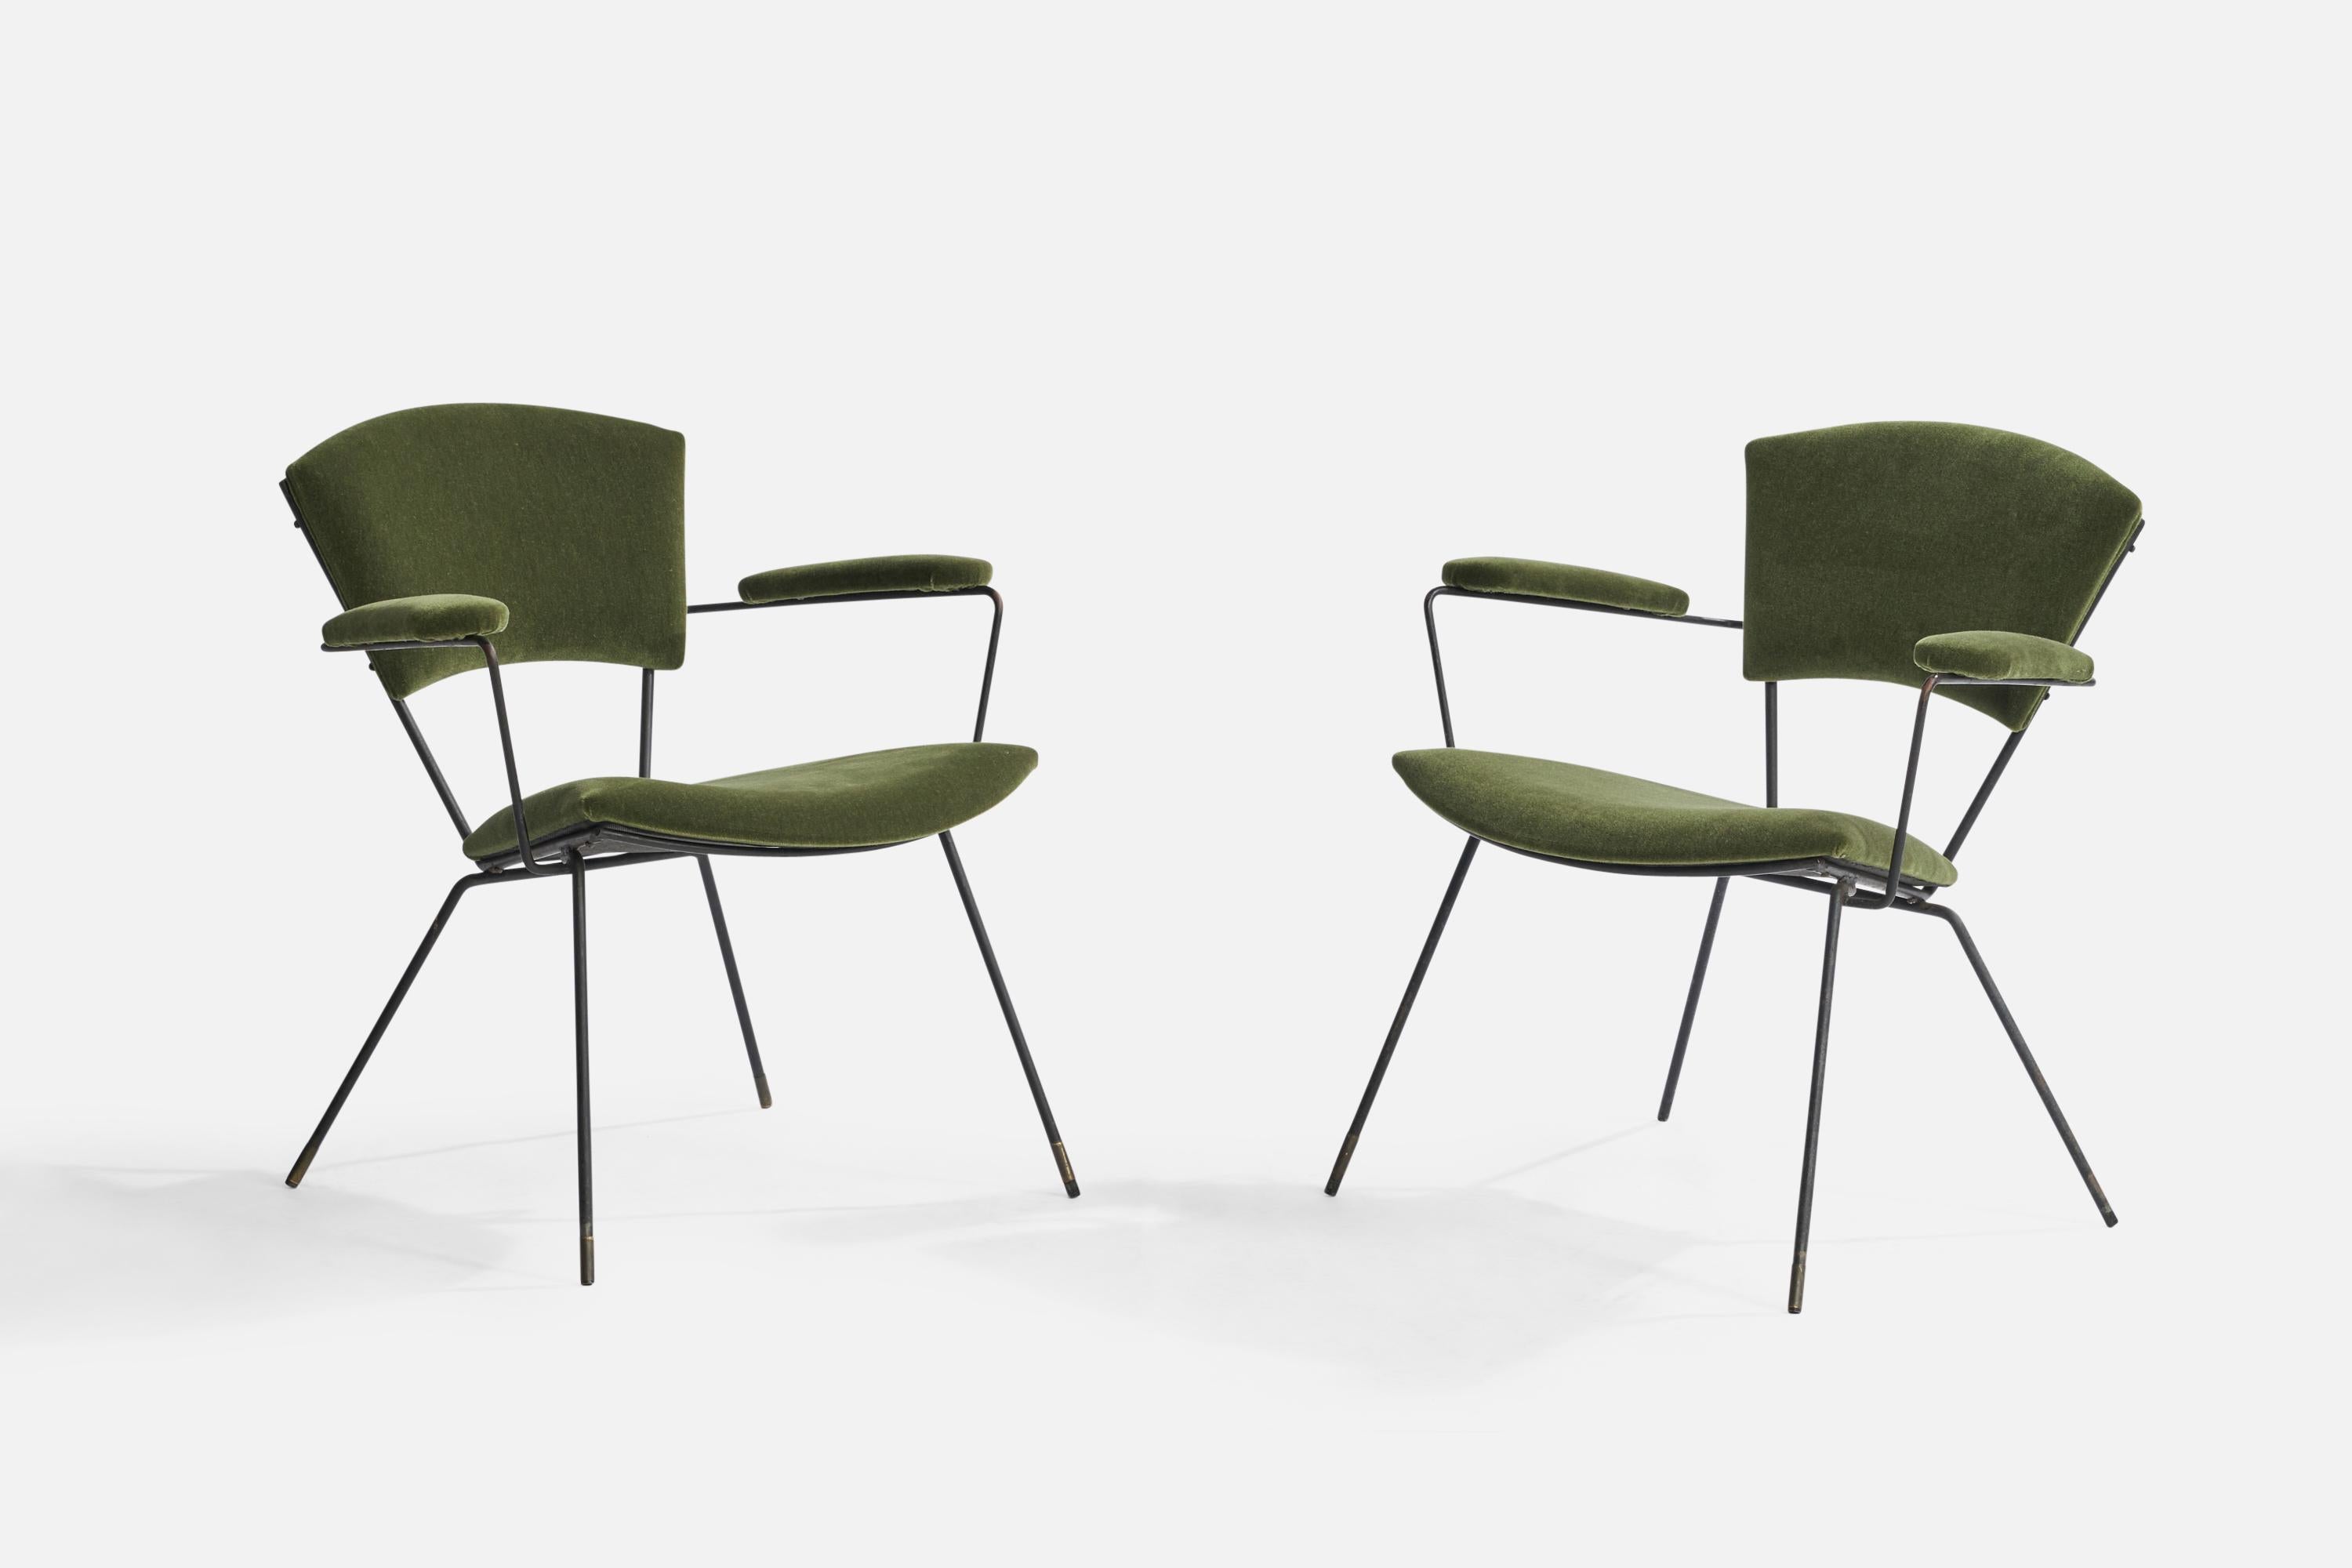 Paire de petites chaises de salon en fer laqué noir et en mohair vert, conçues et produites aux États-Unis, années 1950.

Hauteur de l'assise : 16